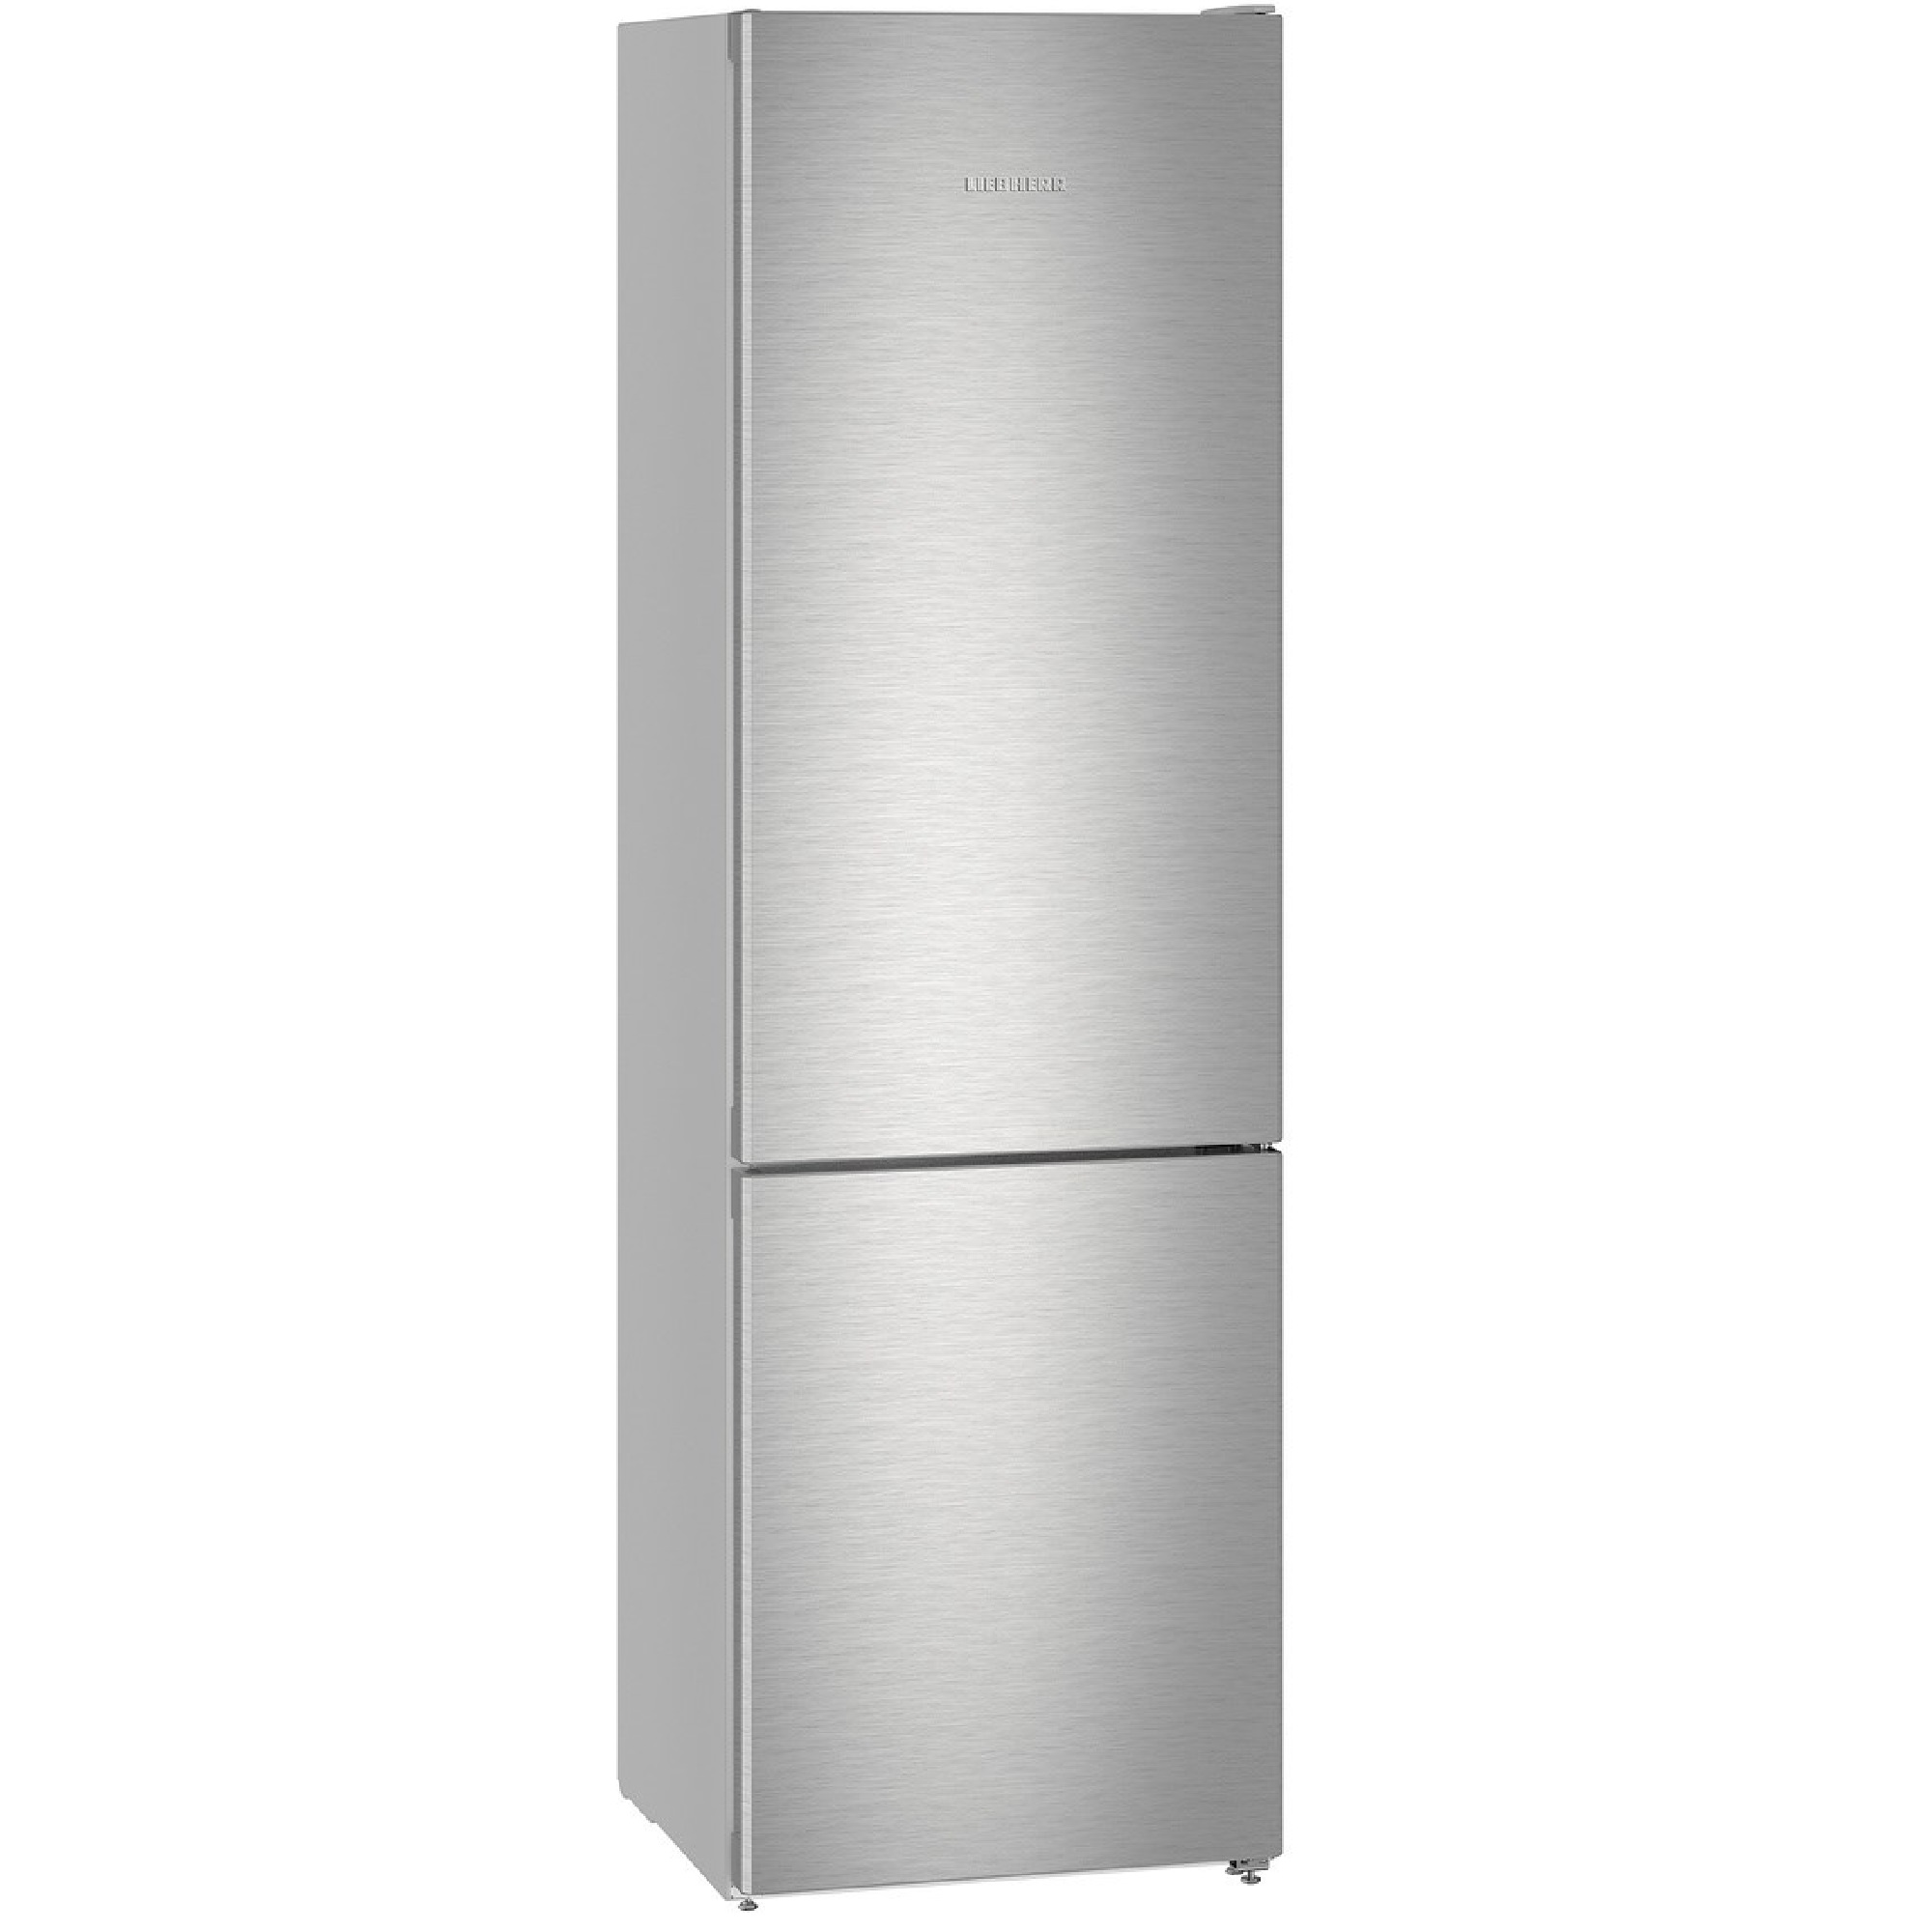 Купить холодильник в воронеже недорого. Холодильник Liebherr cbnes5778. Холодильник Hisense RB-438n4fb1. Холодильник Liebherr CNEF 4735. Двухкамерный холодильник Liebherr CBNEF 4835-21.